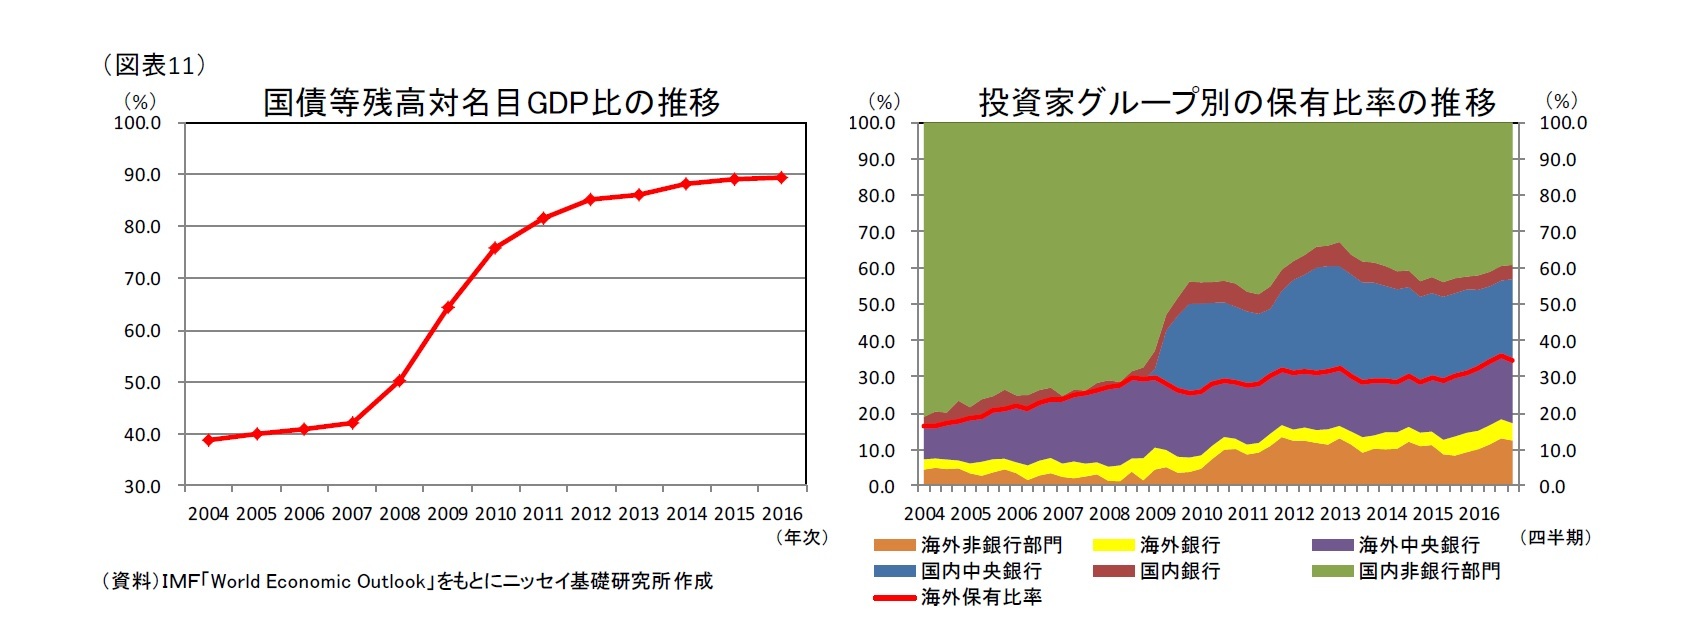 (図表11)国債等残高対名目GDP比の推移/投資家グループ別の保有比率の推移